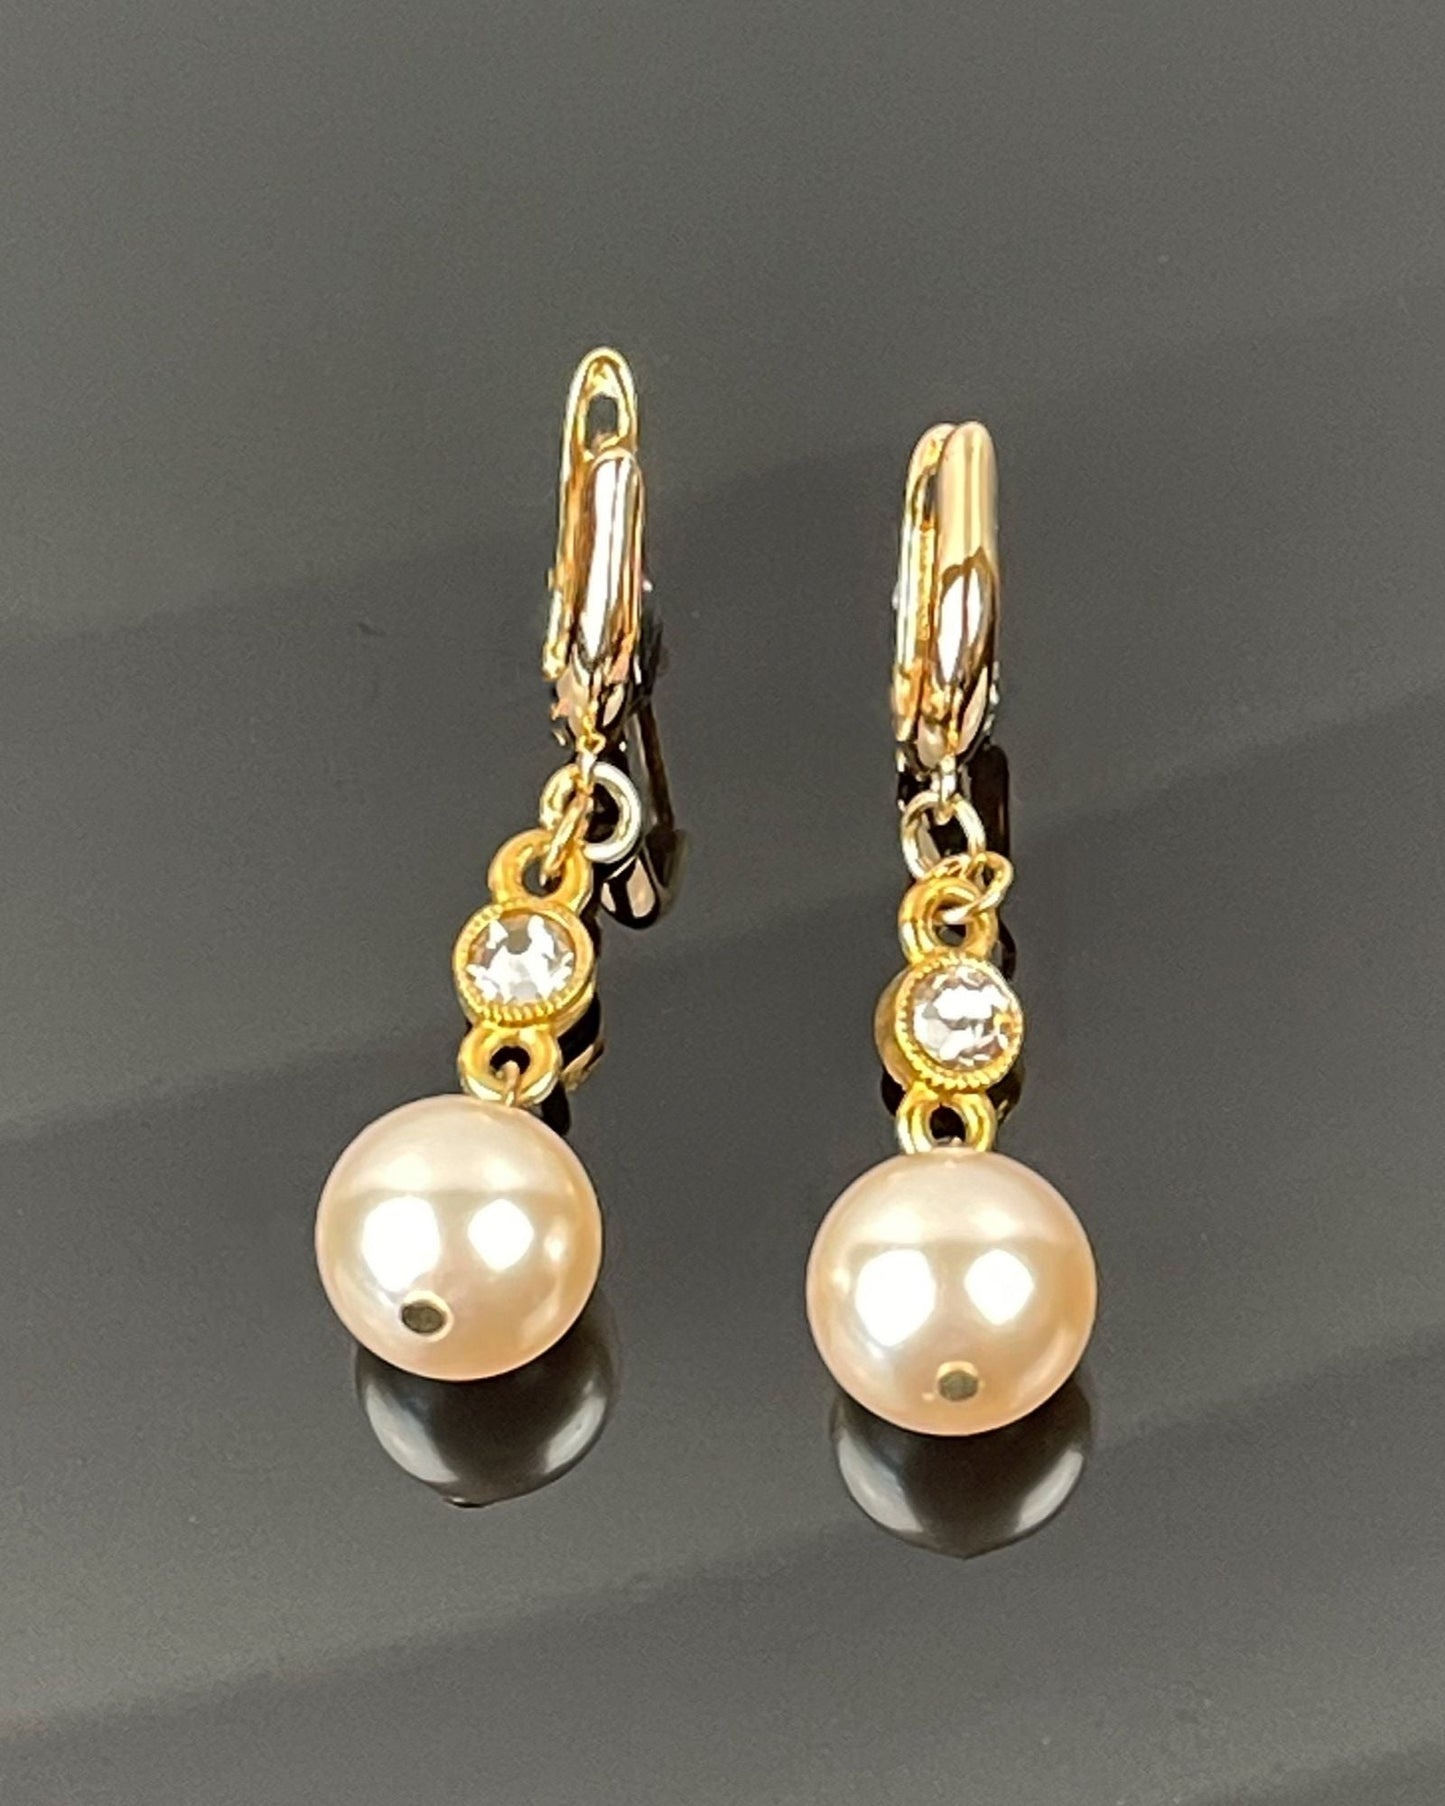 Melia Pearl Earrings-Gold Earrings-Austrian Pearl Earrings-European Crystal-Carabella By Cheryl